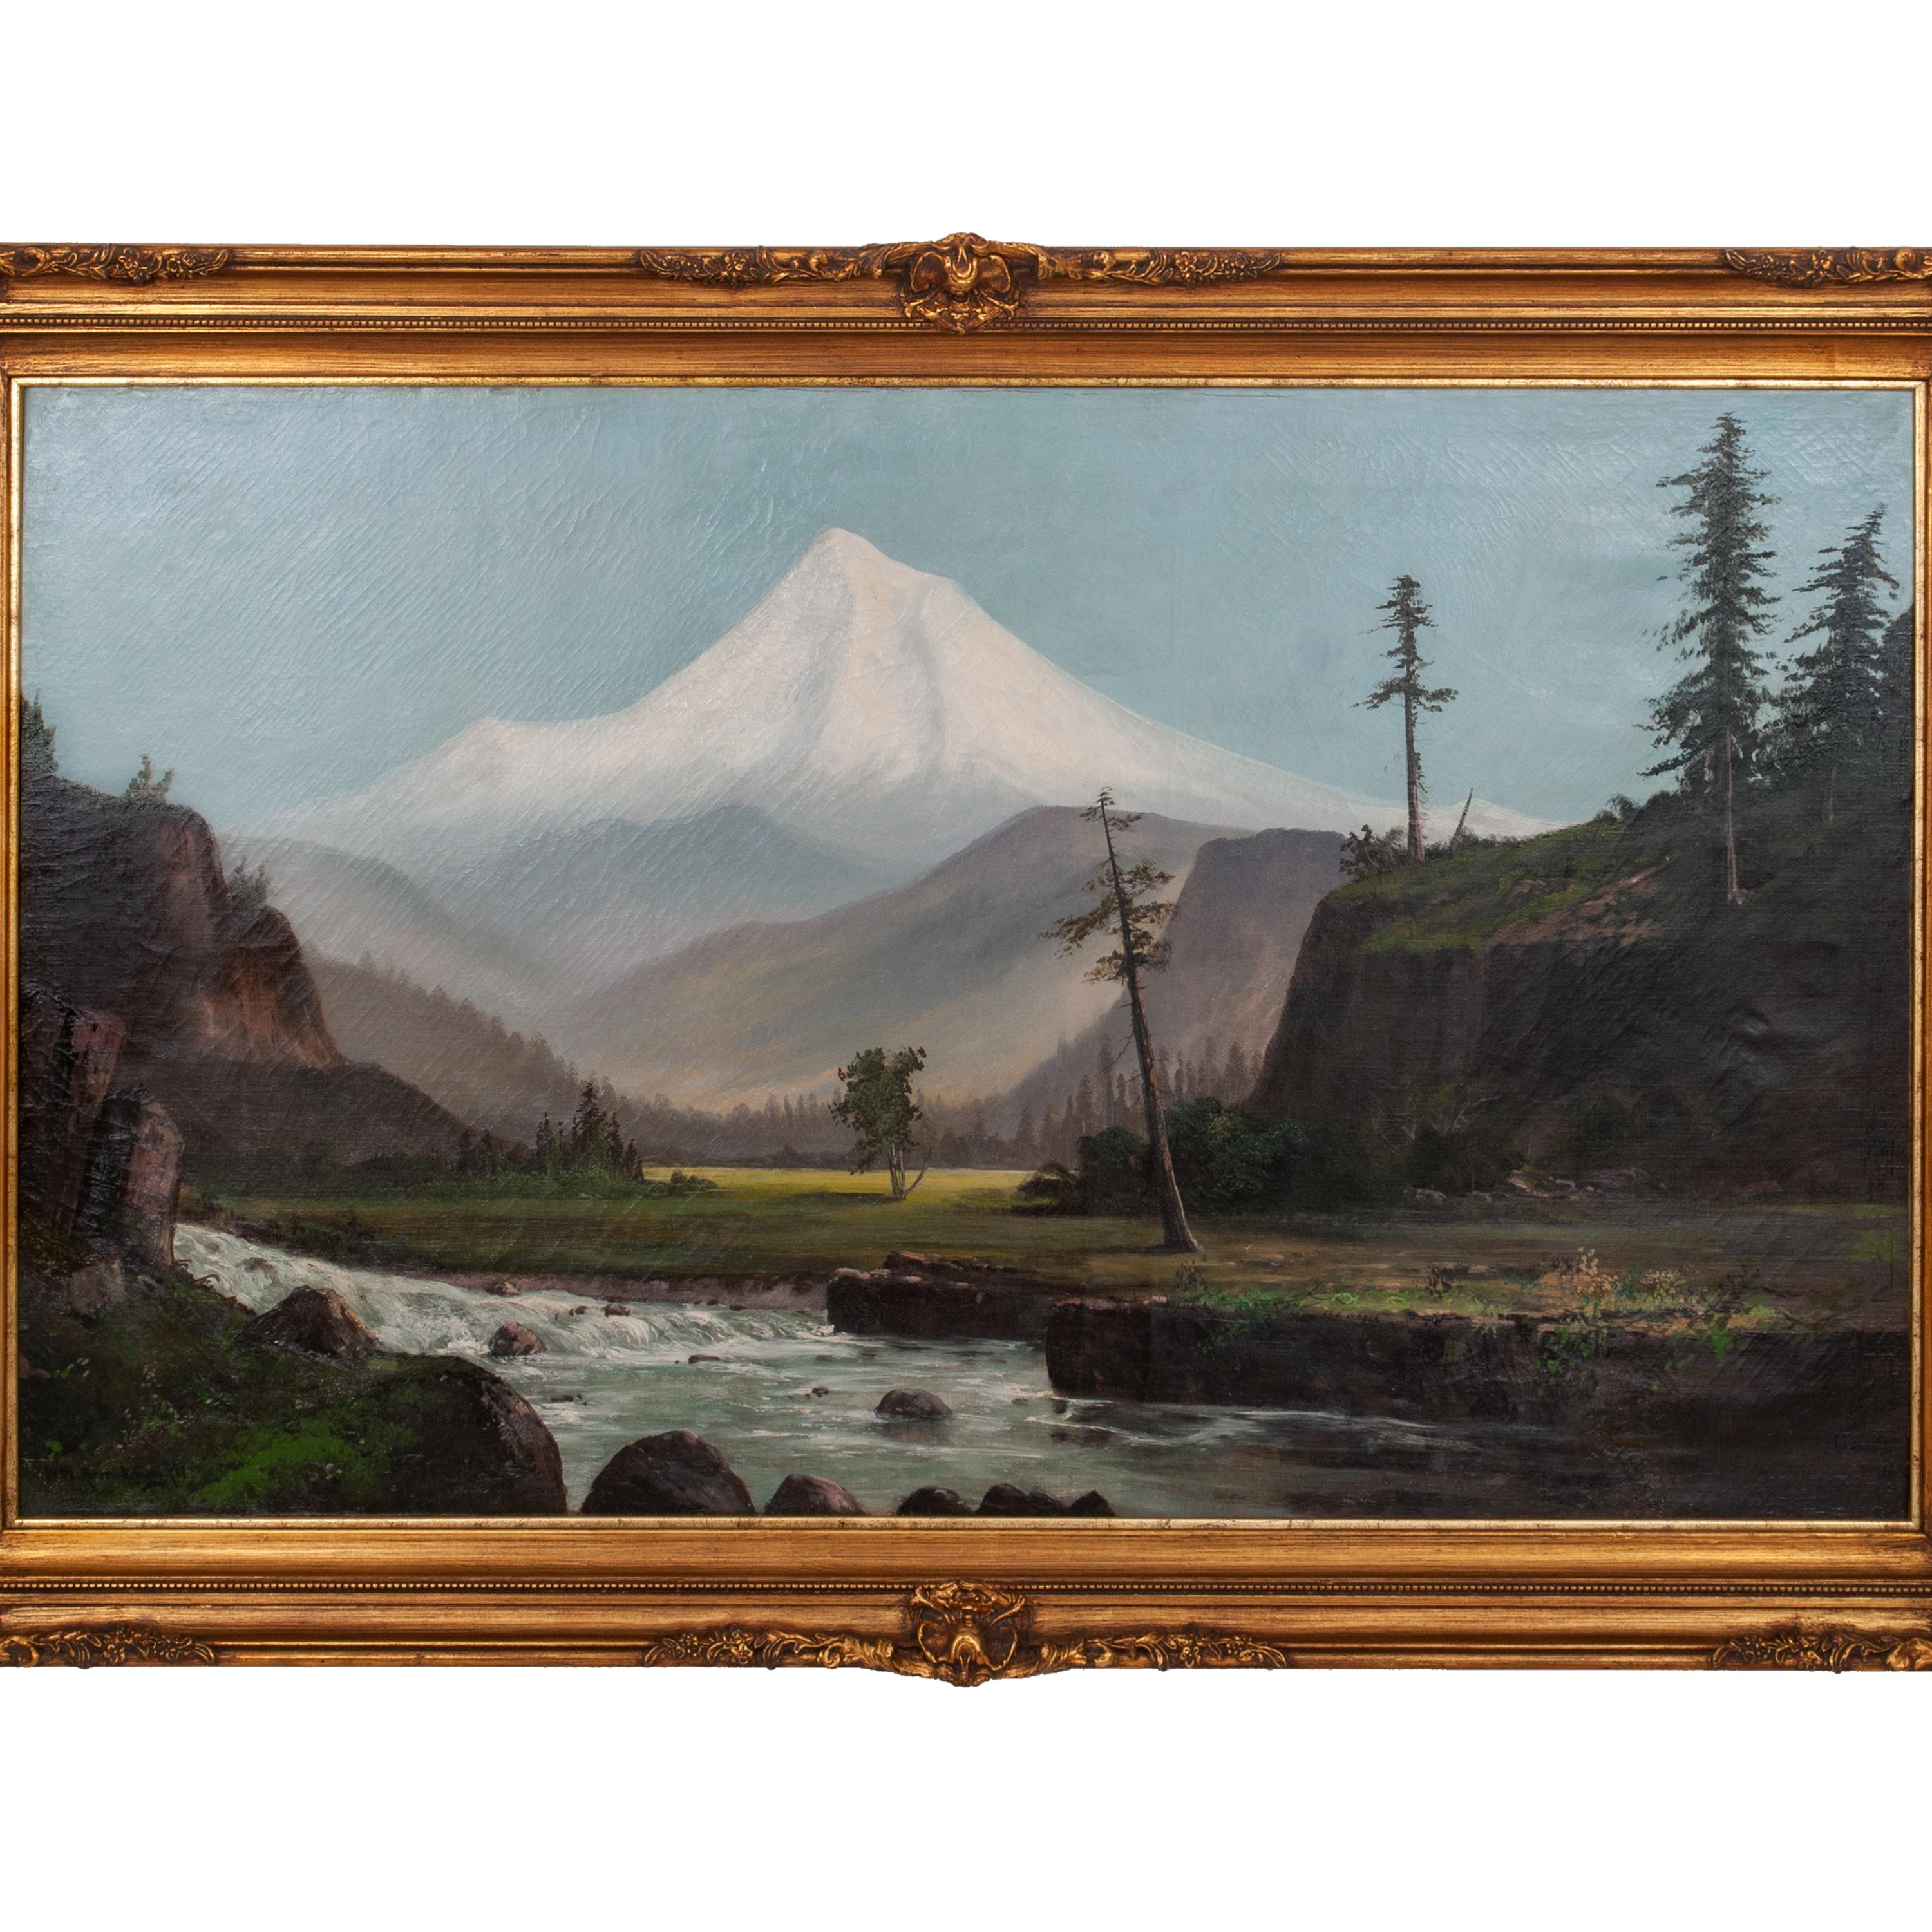 Peinture à l'huile ancienne de William Weaver Armstrong, paysage de mont Hood dans l'Oregon, 1885 - Painting de William Weaver Armstrong 